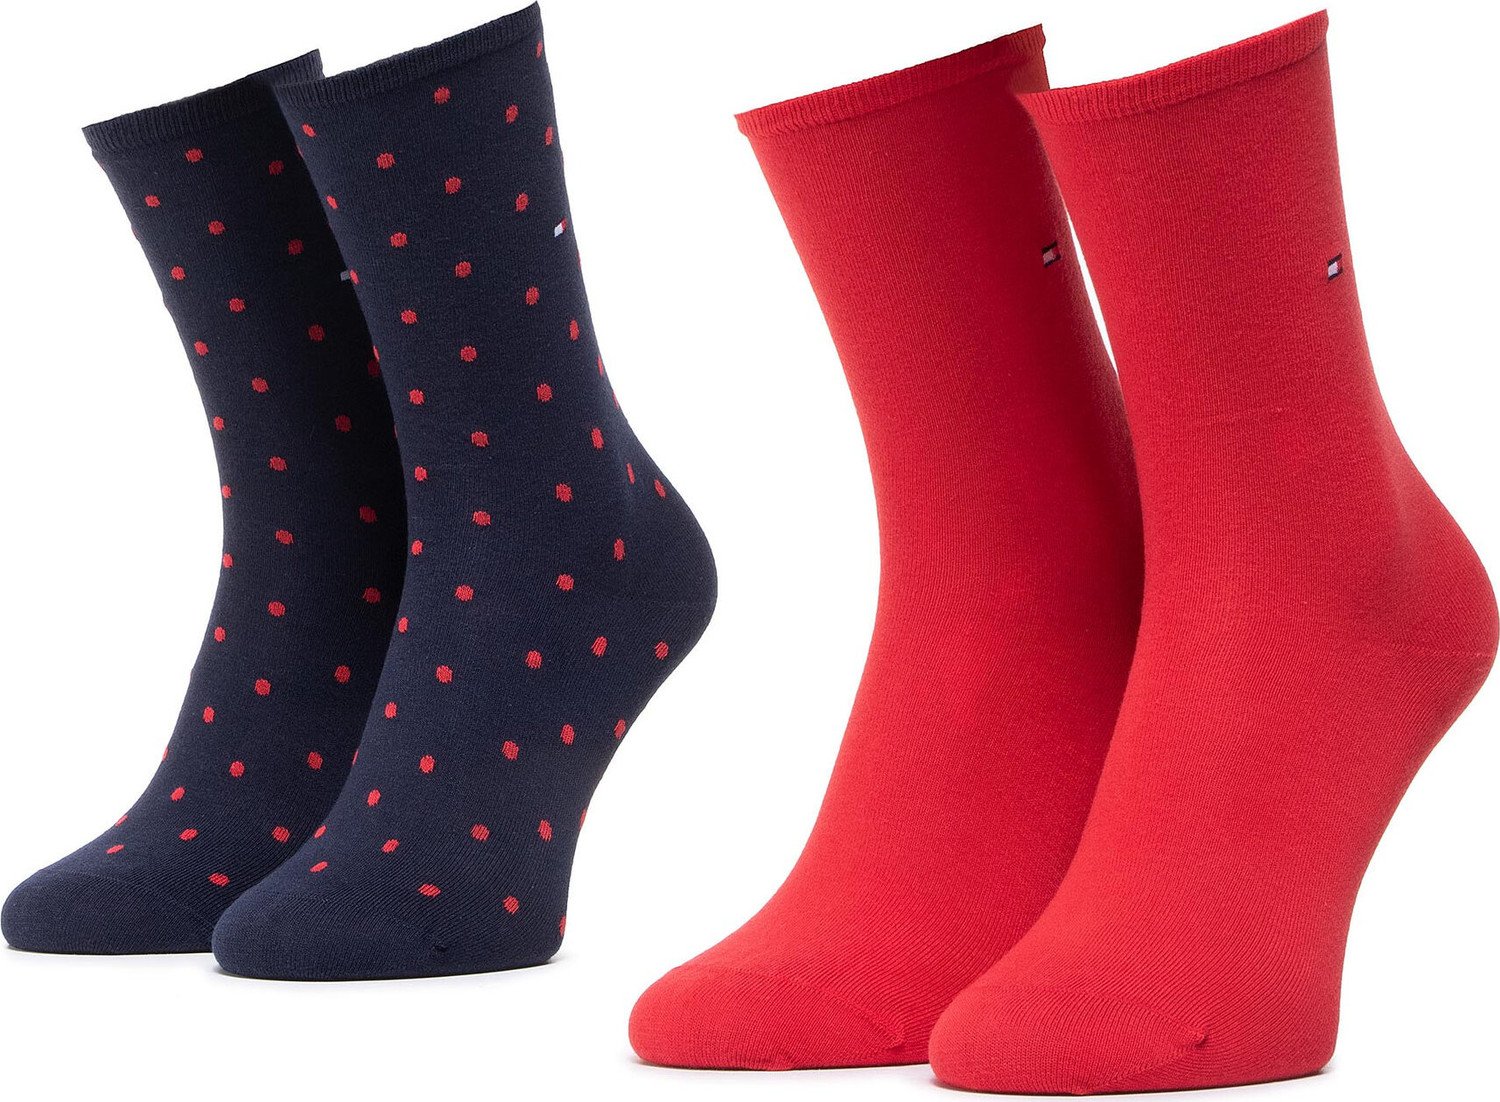 Sada 2 párů dámských vysokých ponožek Tommy Hilfiger 100001493 Red/Navy 035